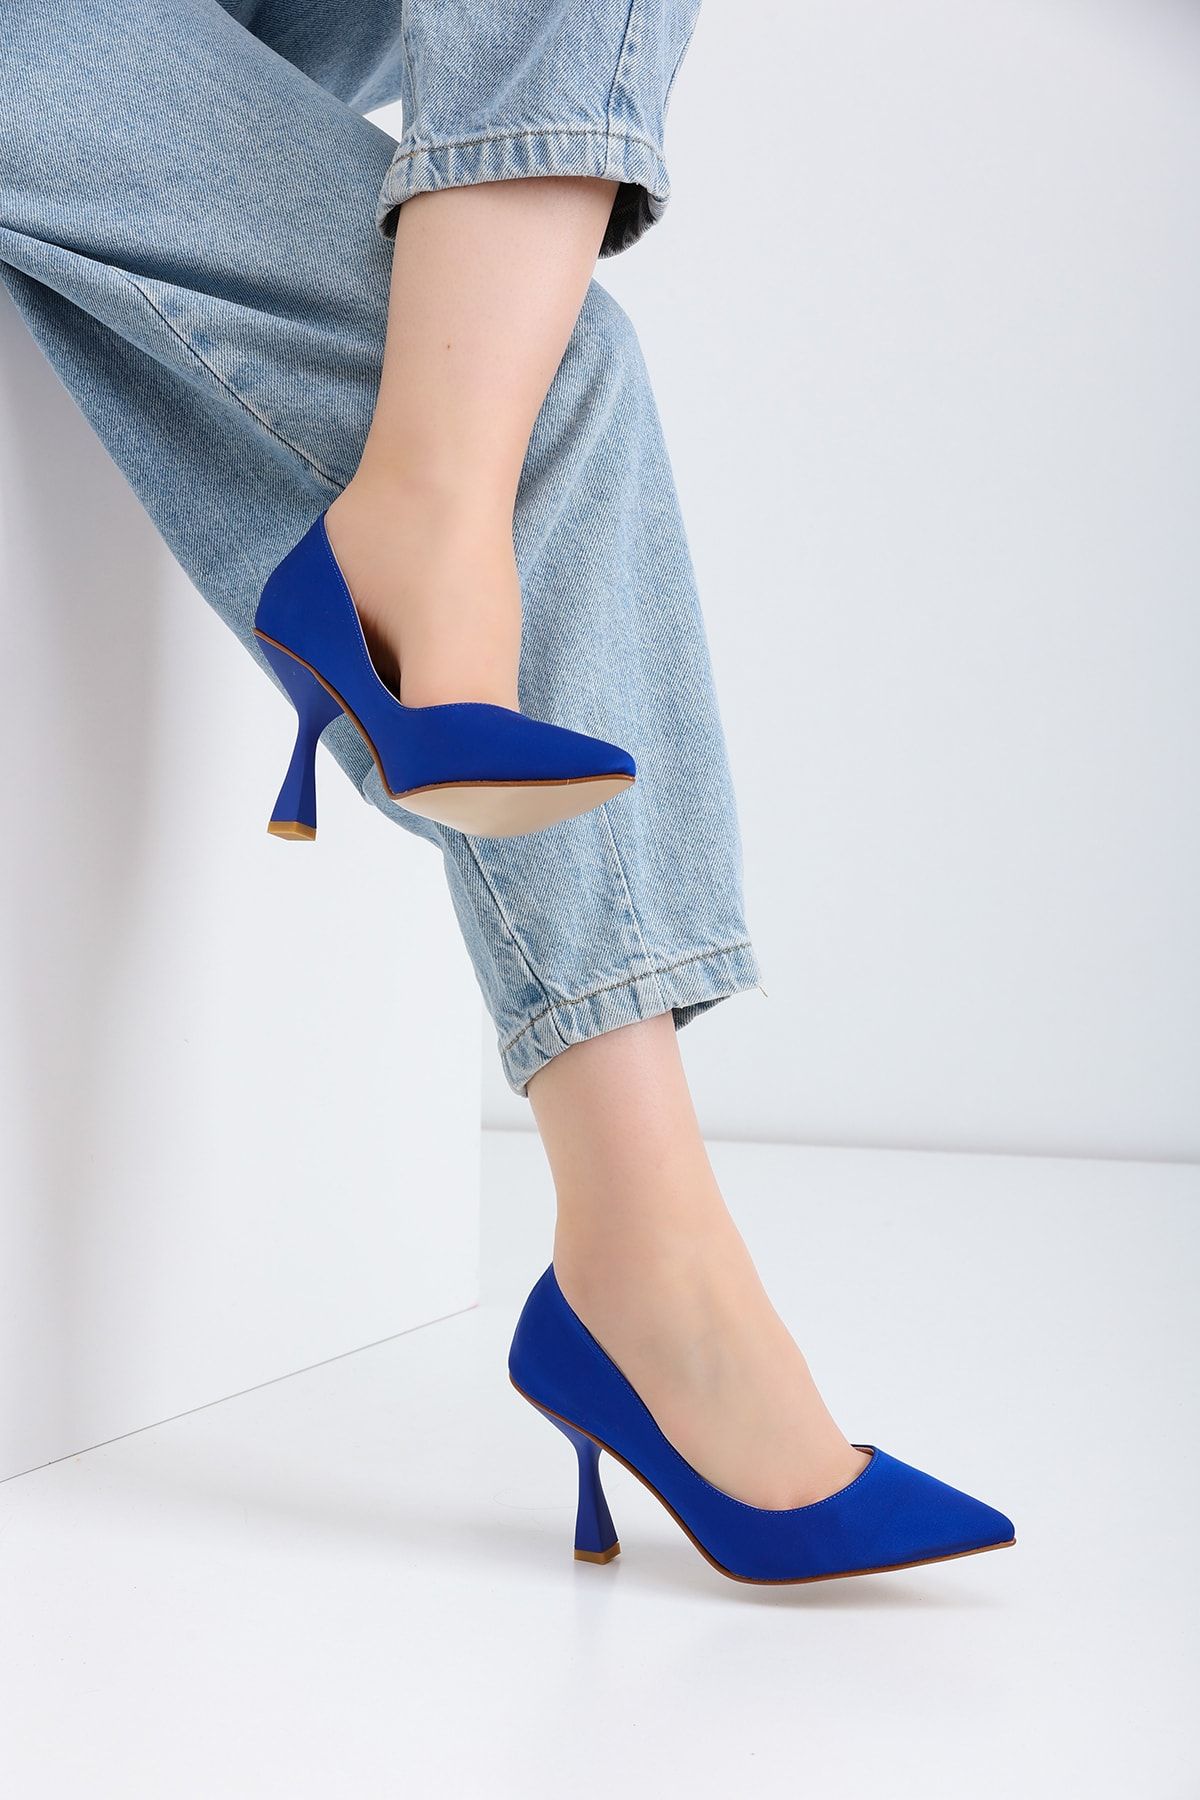 La Limar 8,5cm Saks Mavisi Mavisi Saten Stiletto Kadın Topuklu Ayakkabı